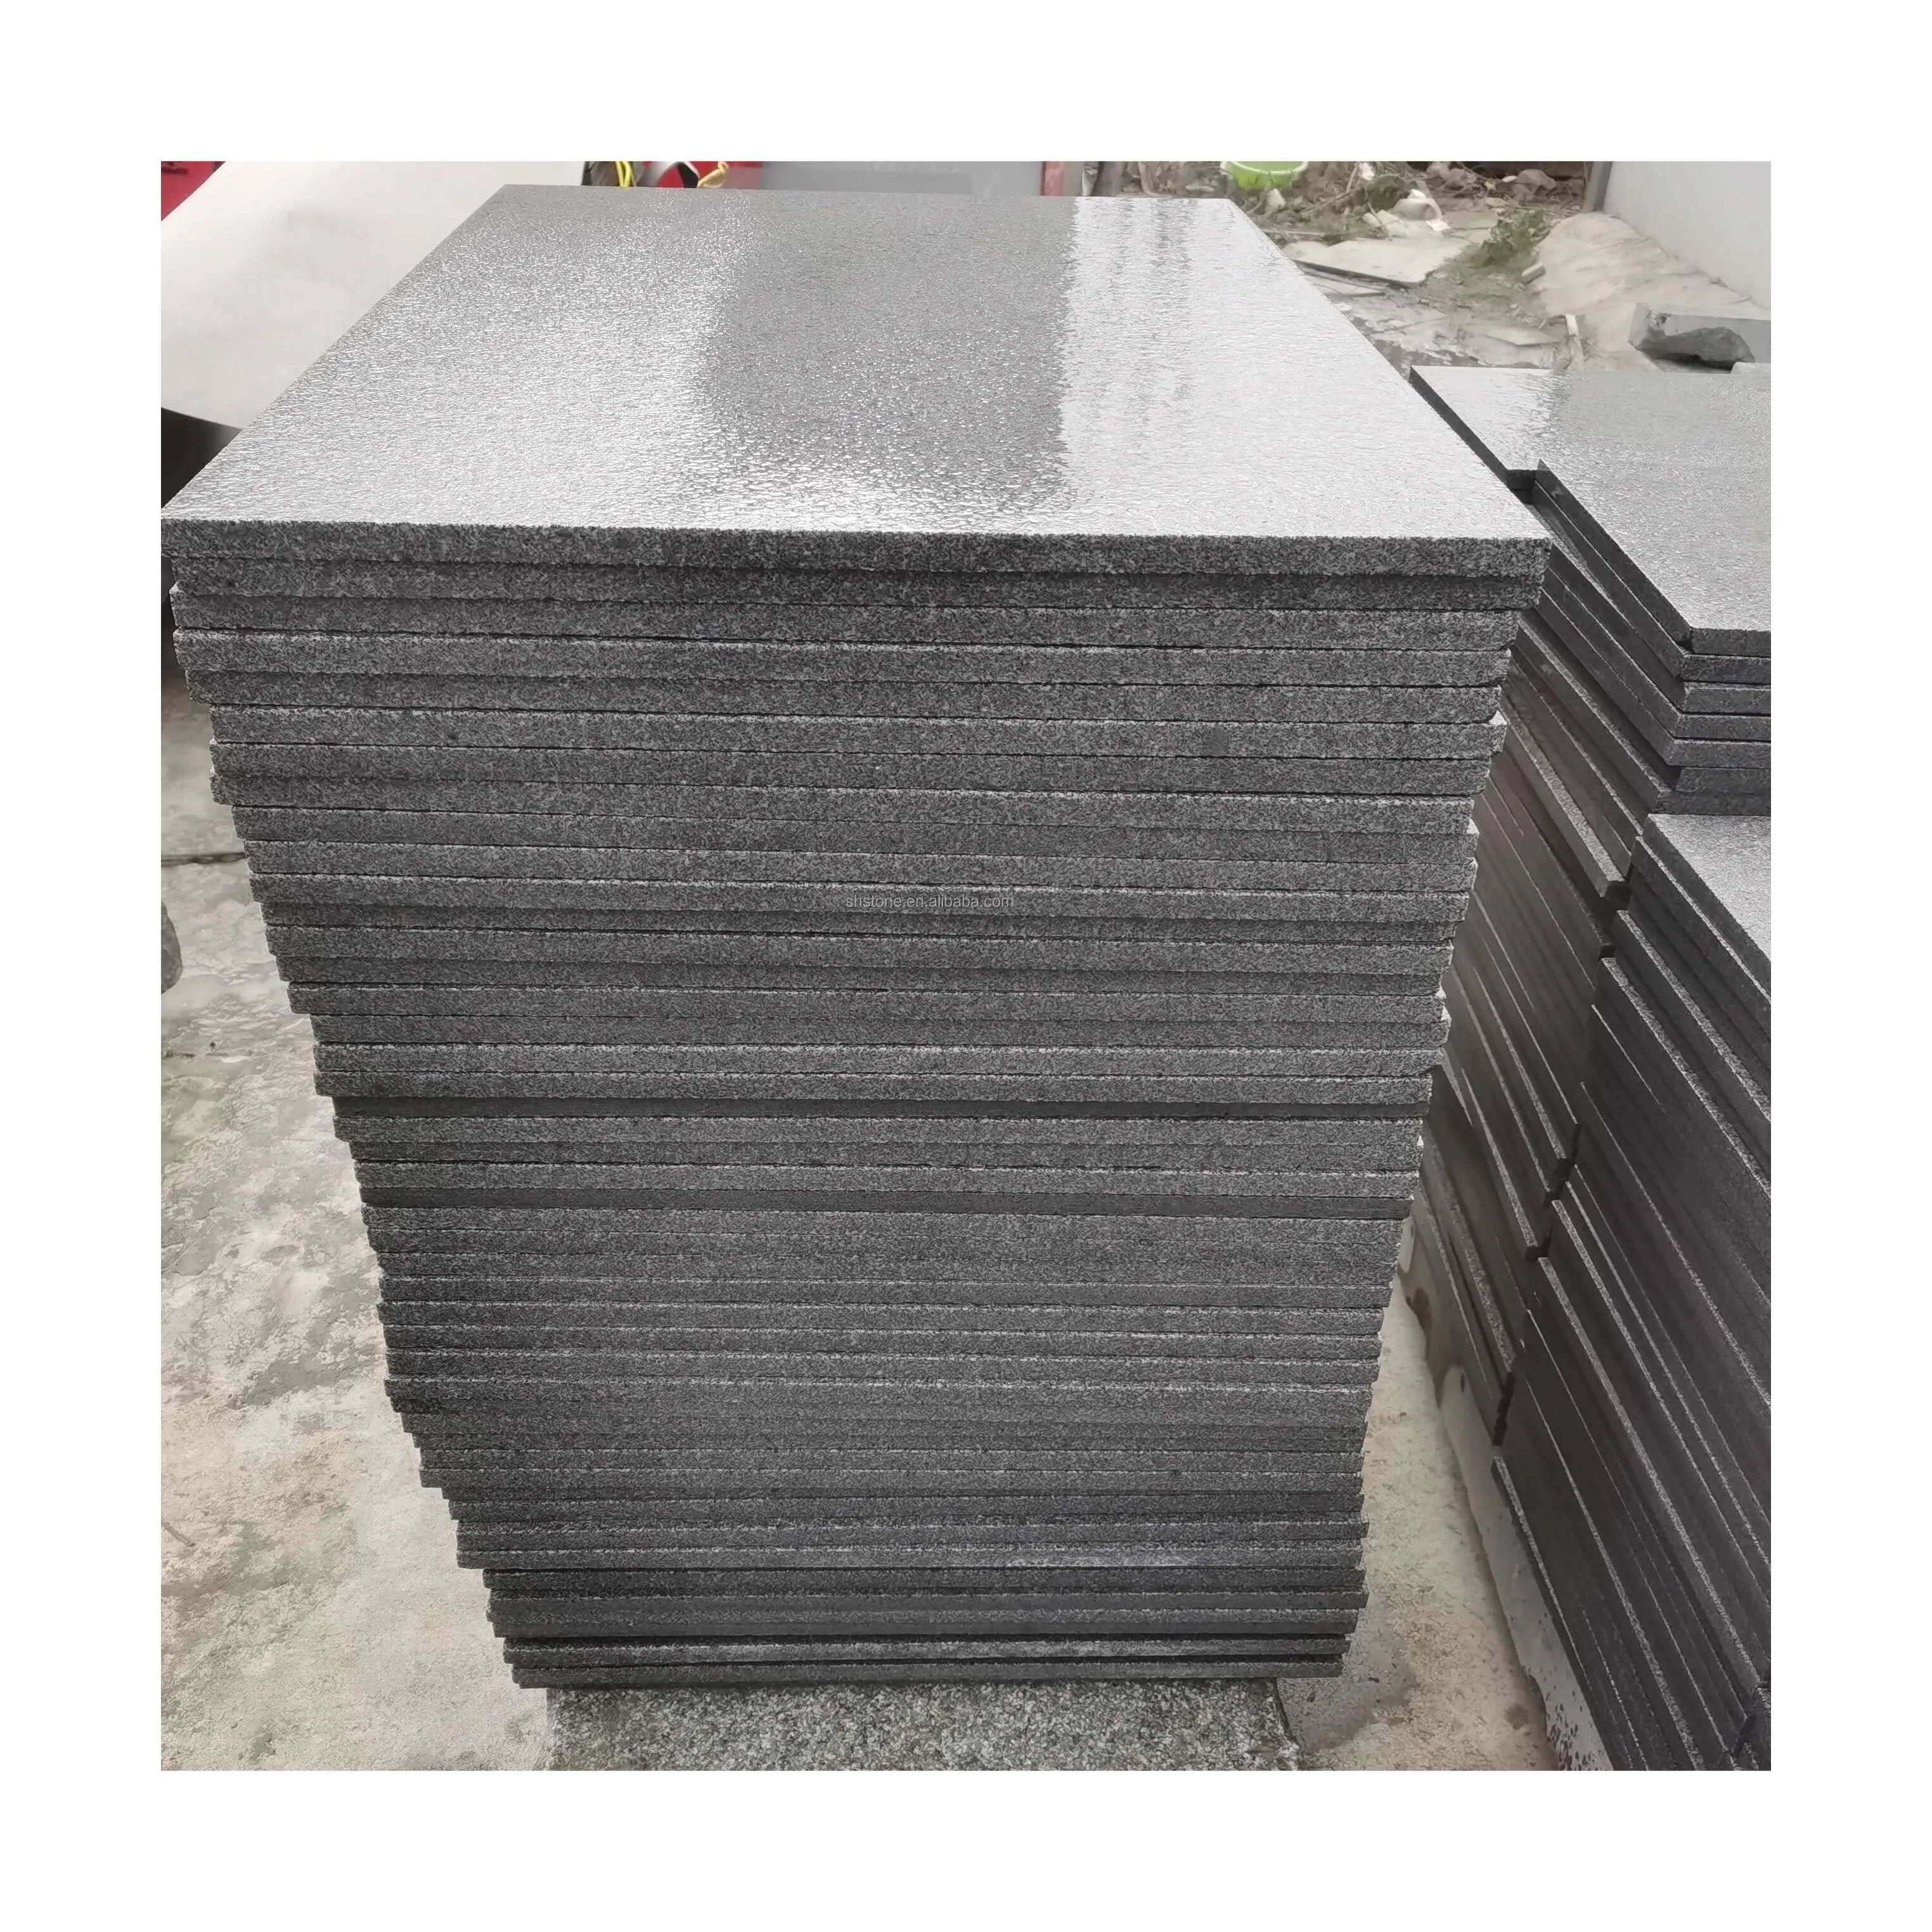 Baldosa de granito G603 para pavimentación de piedra al aire libre, baldosa de granito gris claro, barata, venta al por mayor